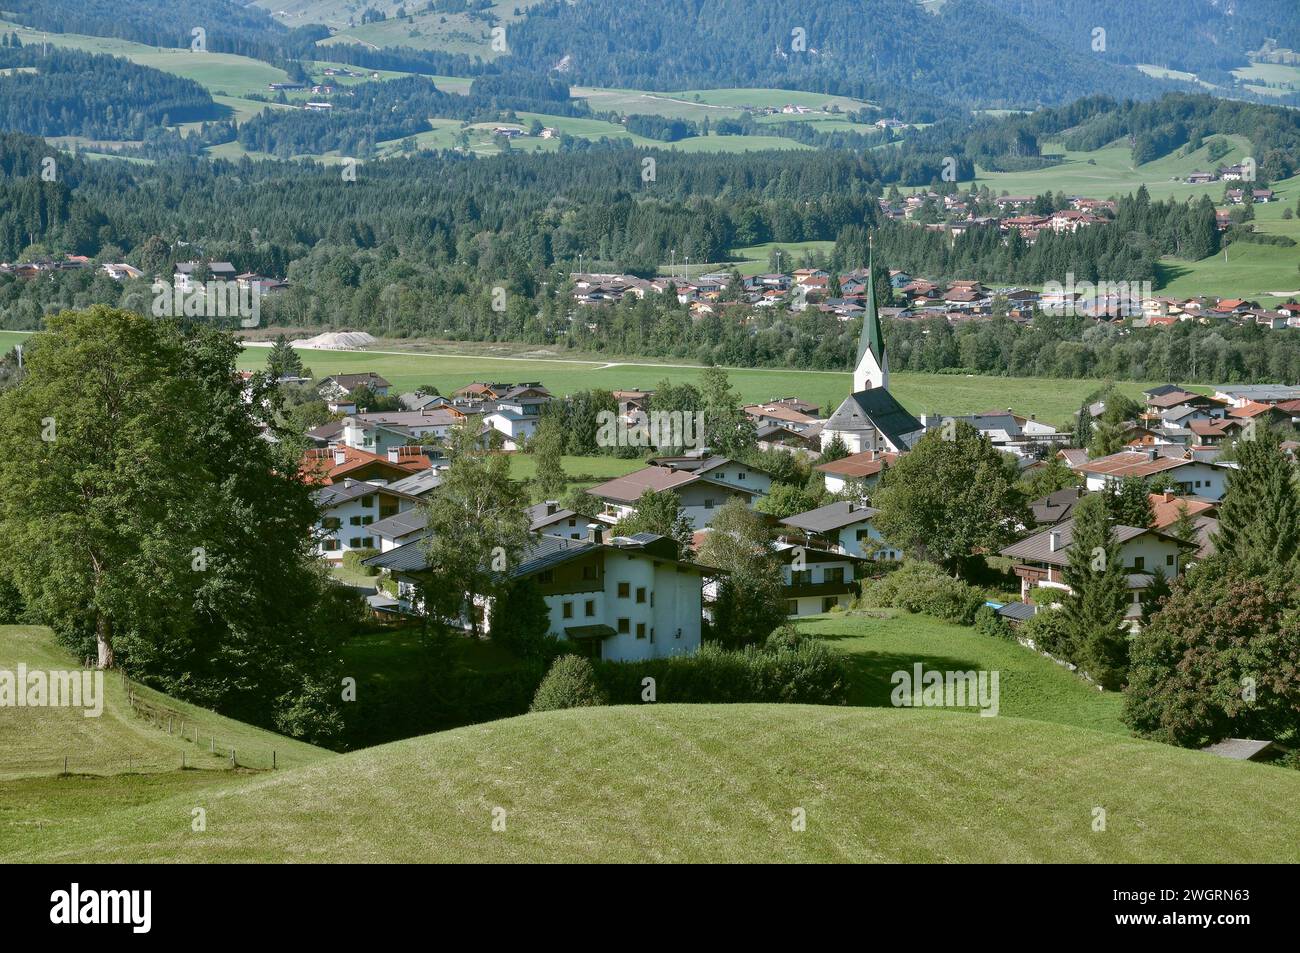 Village of Kössen,Tirol,Austria Stock Photo